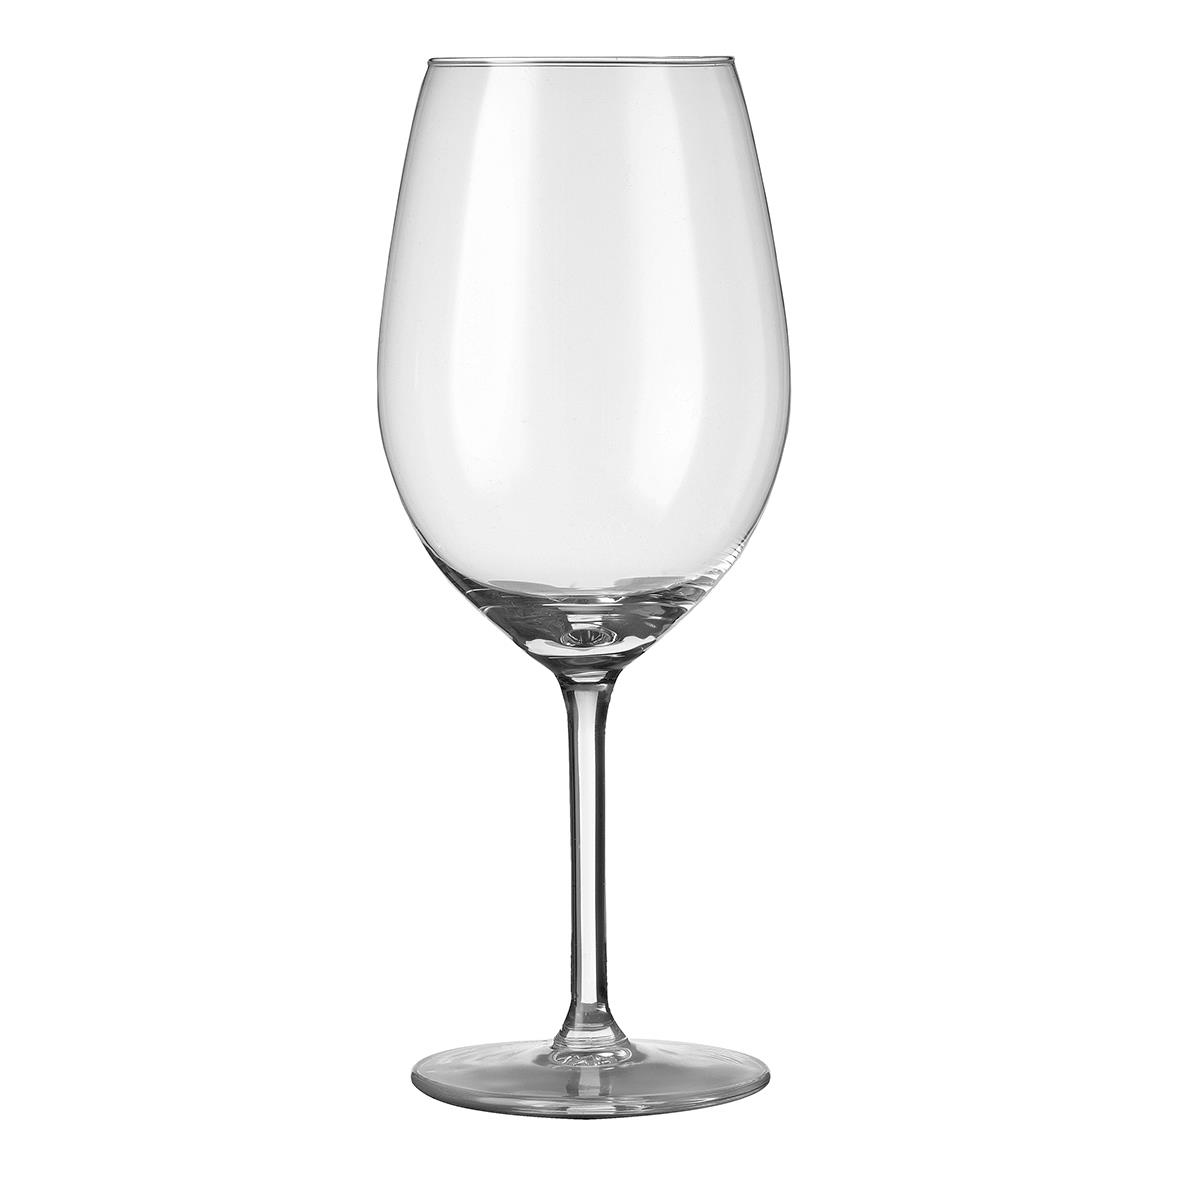 Esprit Weinglas mit einem Fassungsvermögen von 53 cl wird bedruckt oder graviert